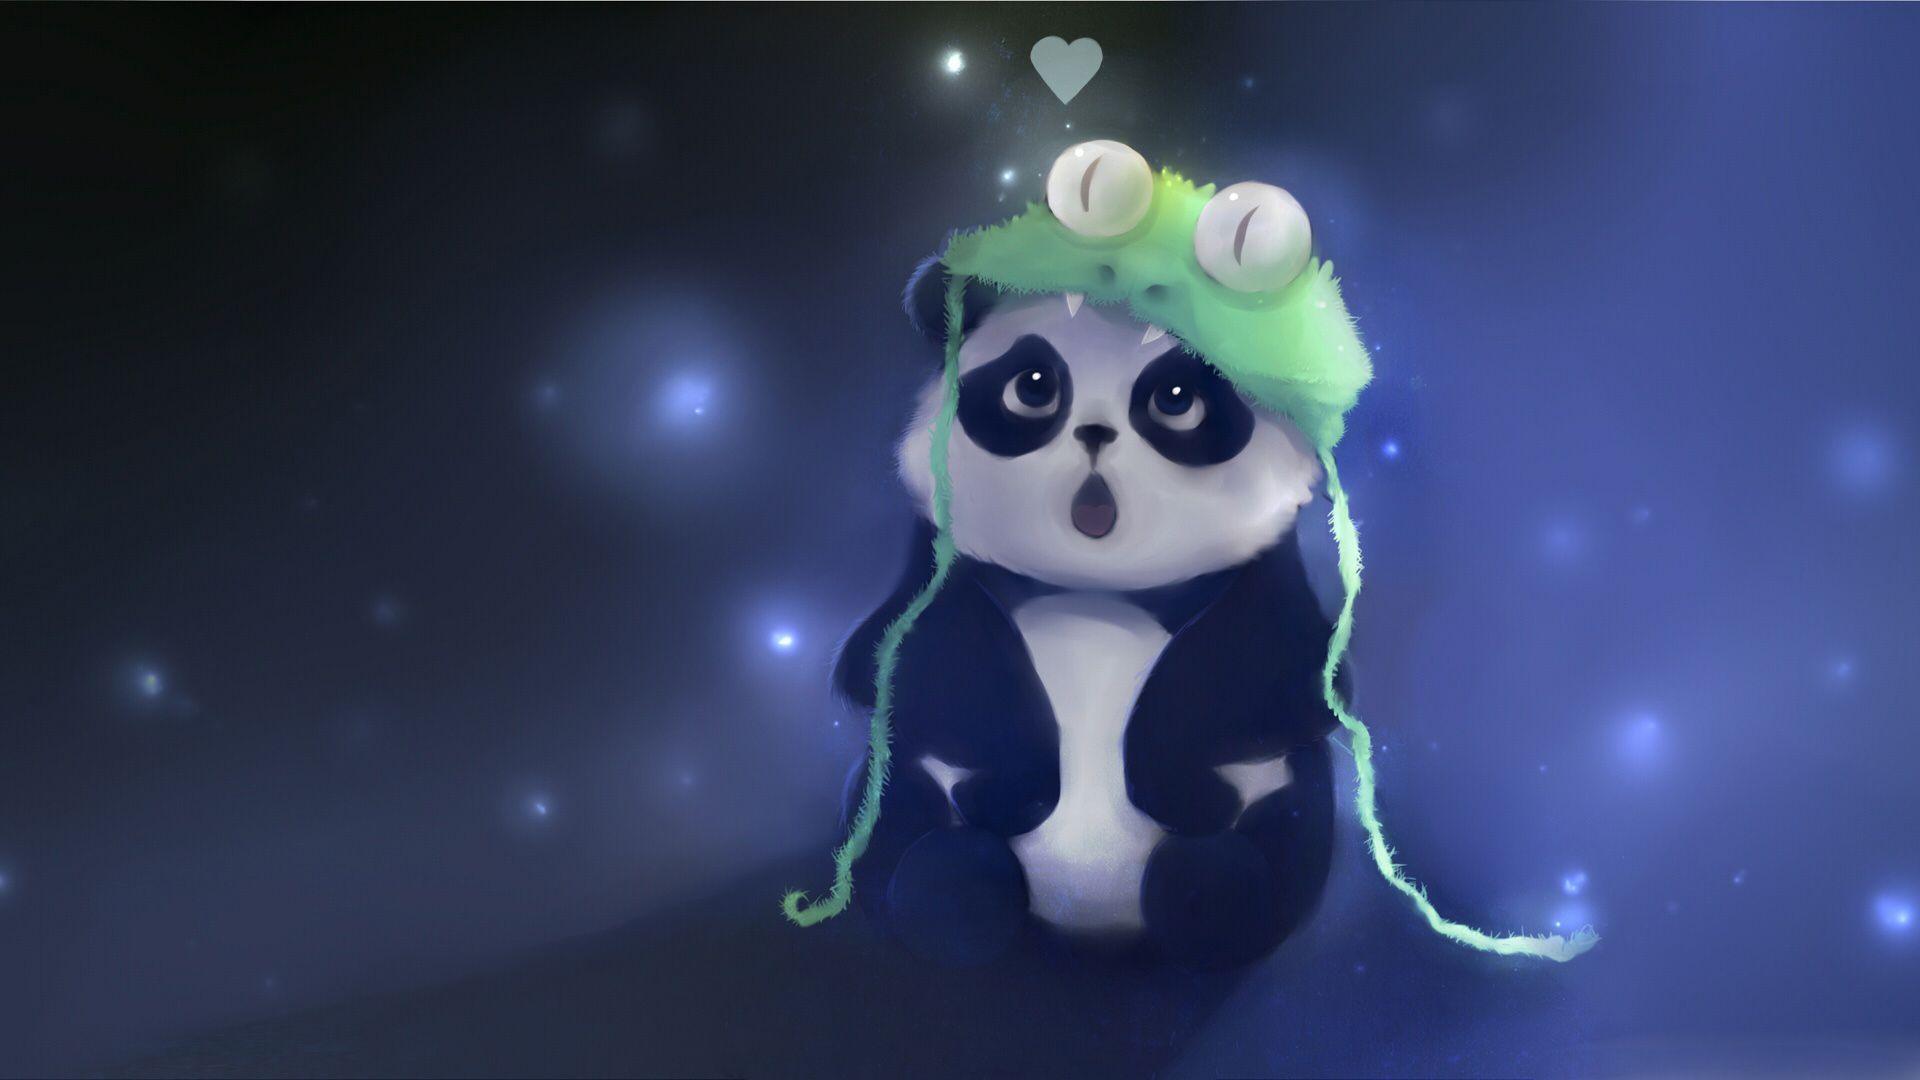 Funny Panda Cute Baby Image Wallpaper